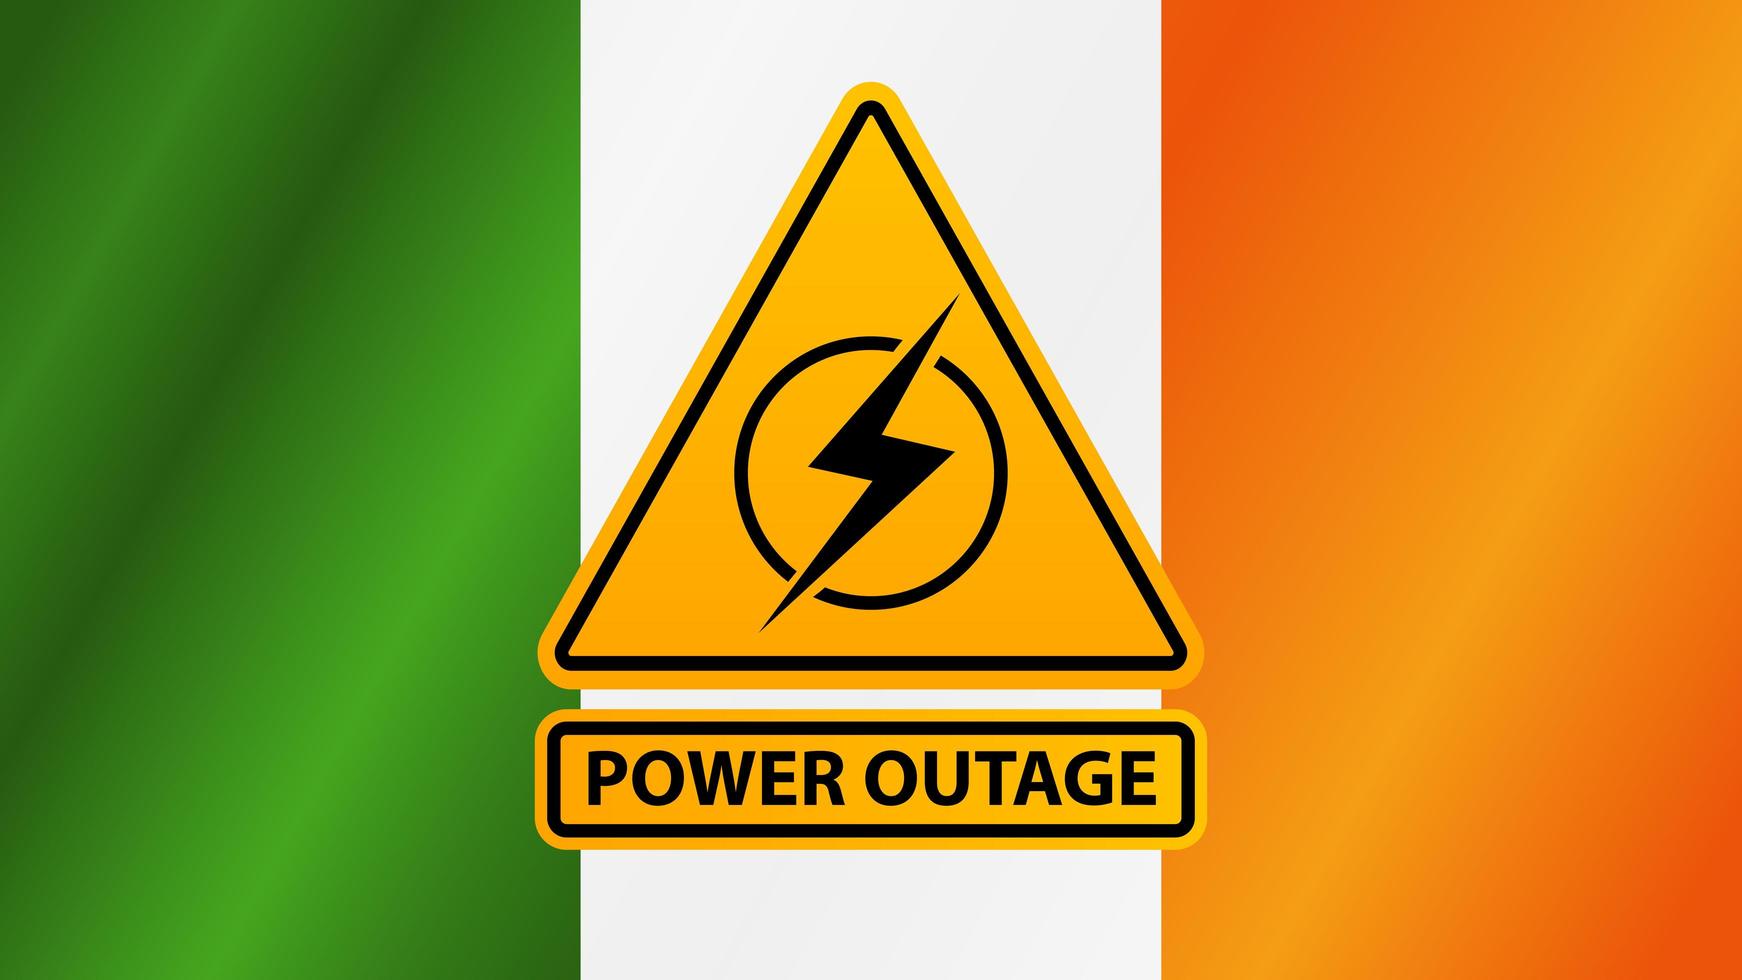 Corte de energía, señal de advertencia amarilla en el fondo de la bandera de Irlanda vector